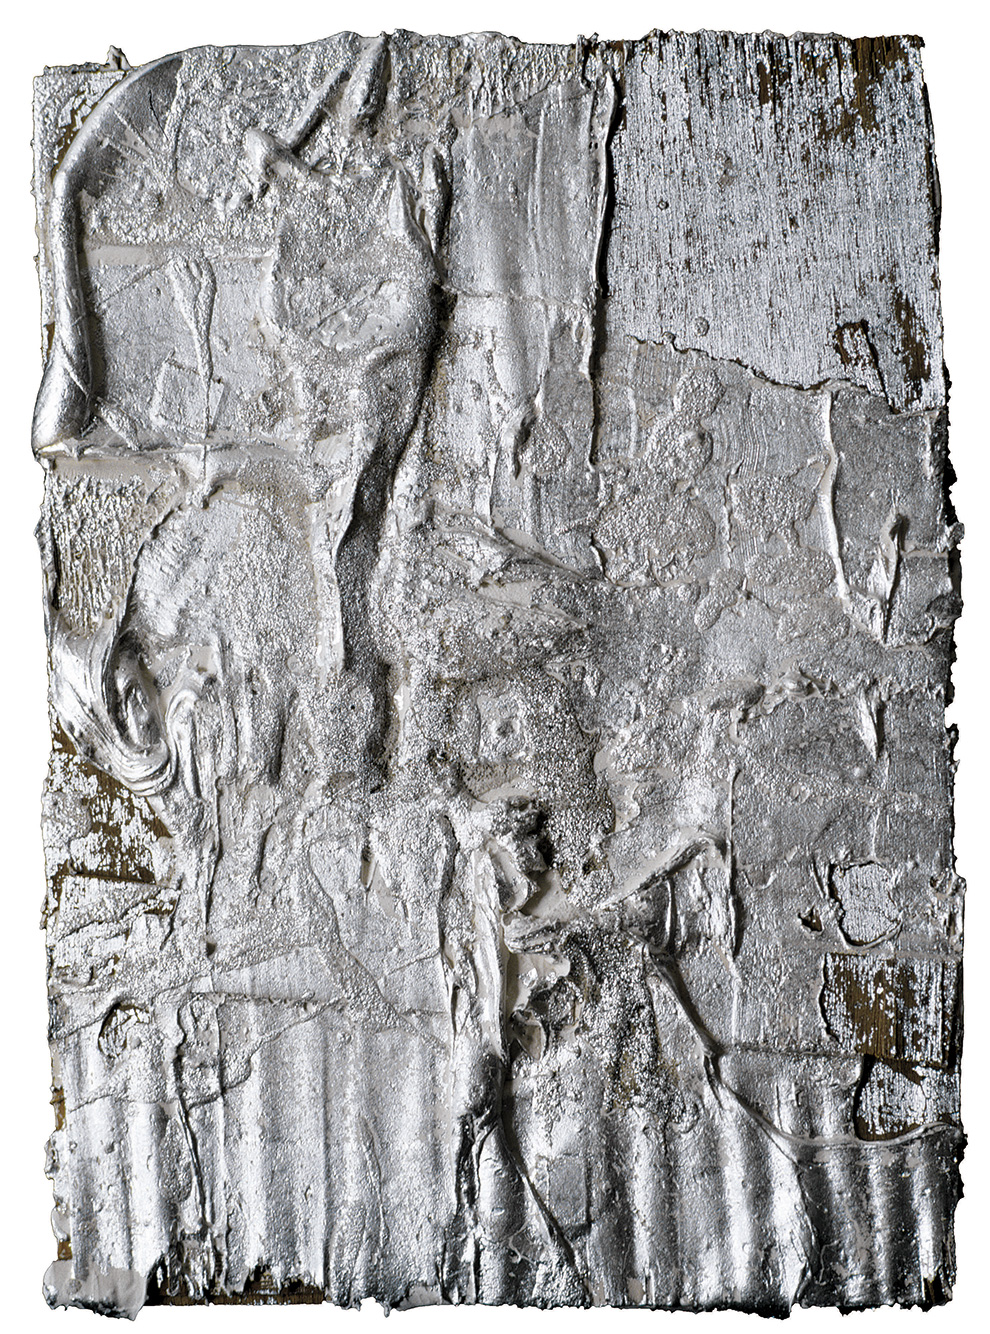 《古裂—银》--54x39x6cm--木质构造、麻纸、矿物·植物·土质颜料、箔--2002年.jpg